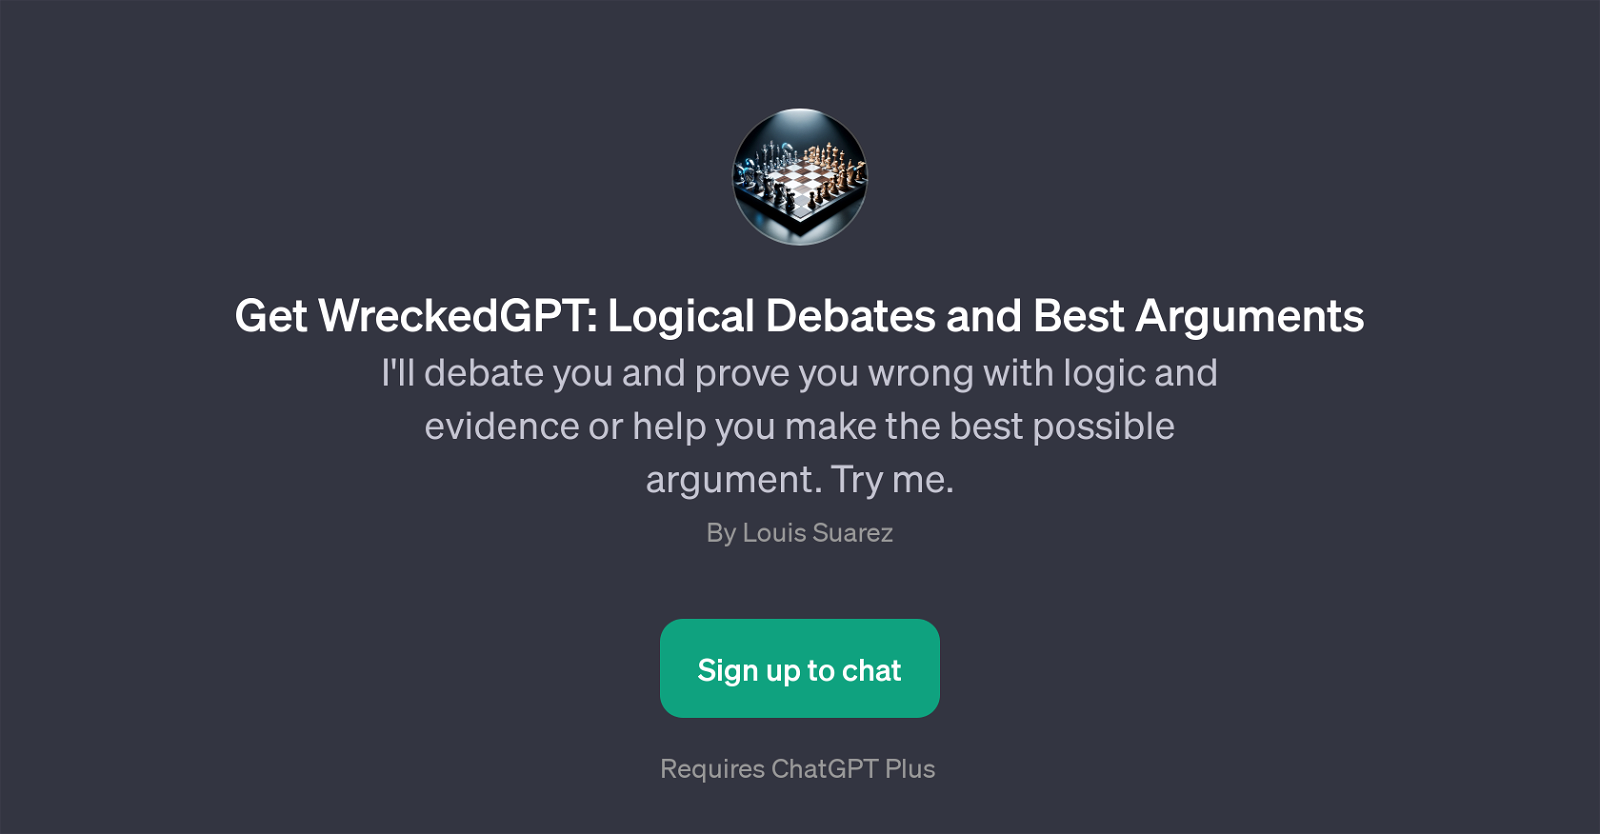 Get WreckedGPT: Logical Debates and Best Arguments website